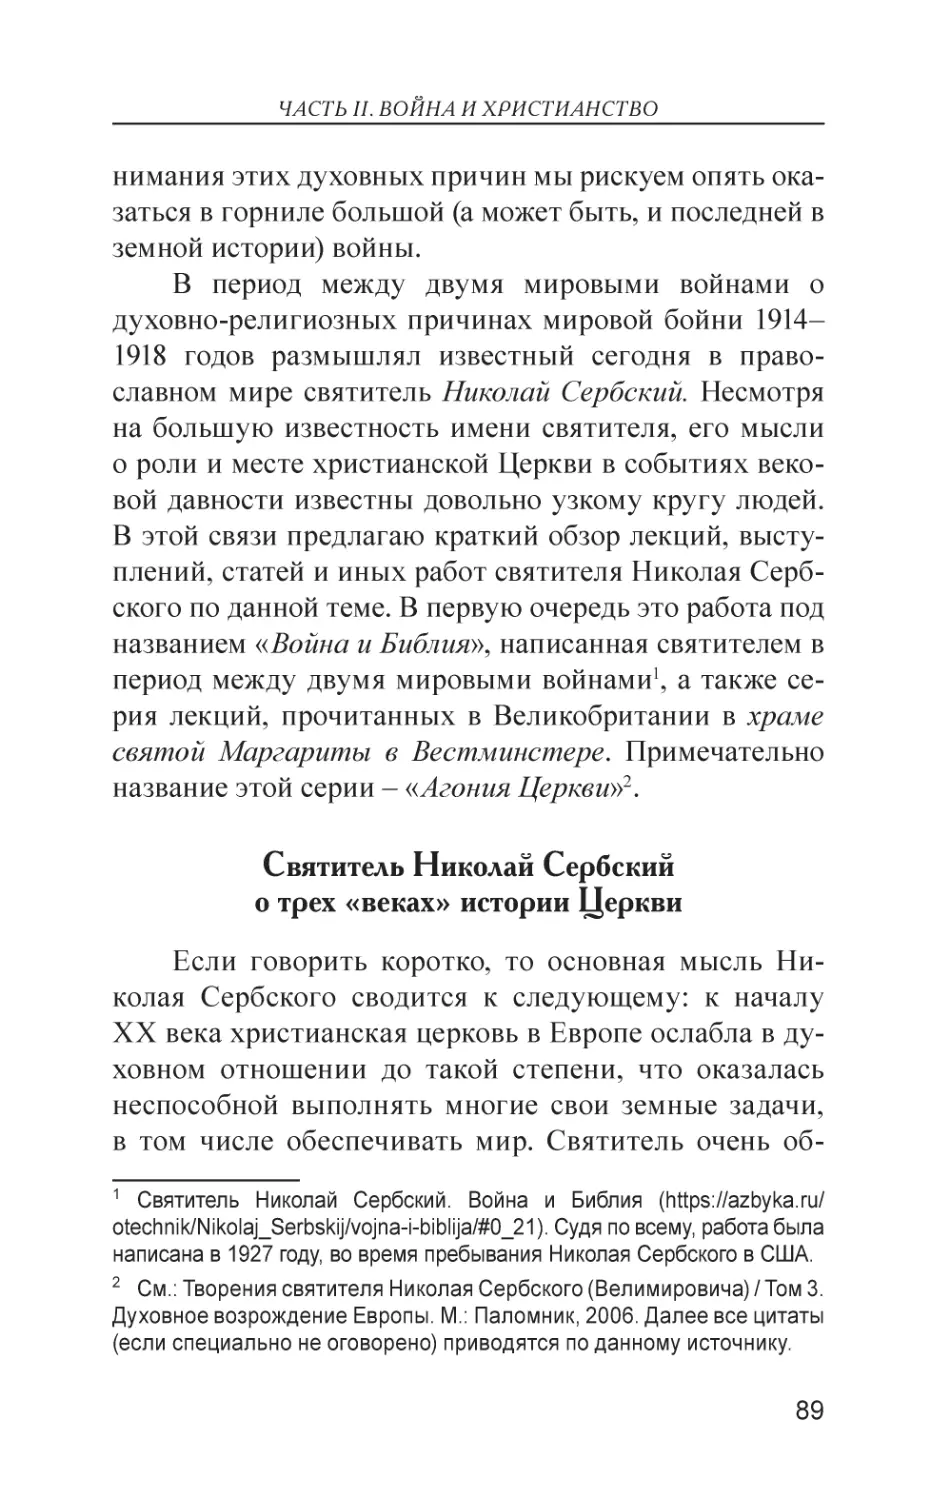 Святитель Николай Сербский о трех «веках» истории Церкви